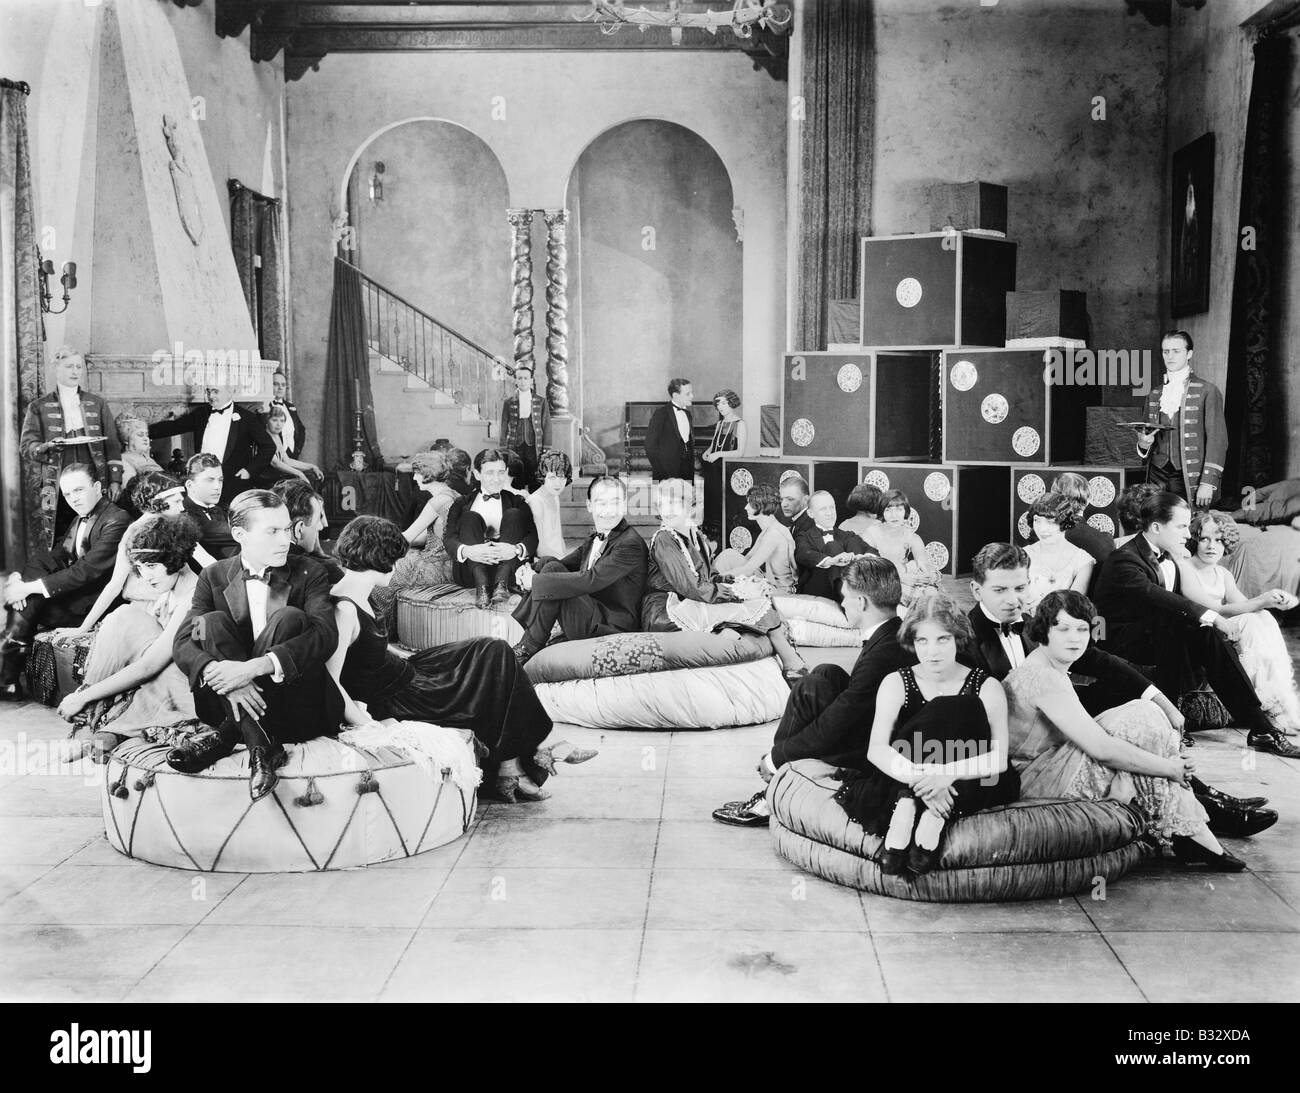 Gruppe von Menschen sitzen auf übergroße Kissen in einer Halle Stockfoto